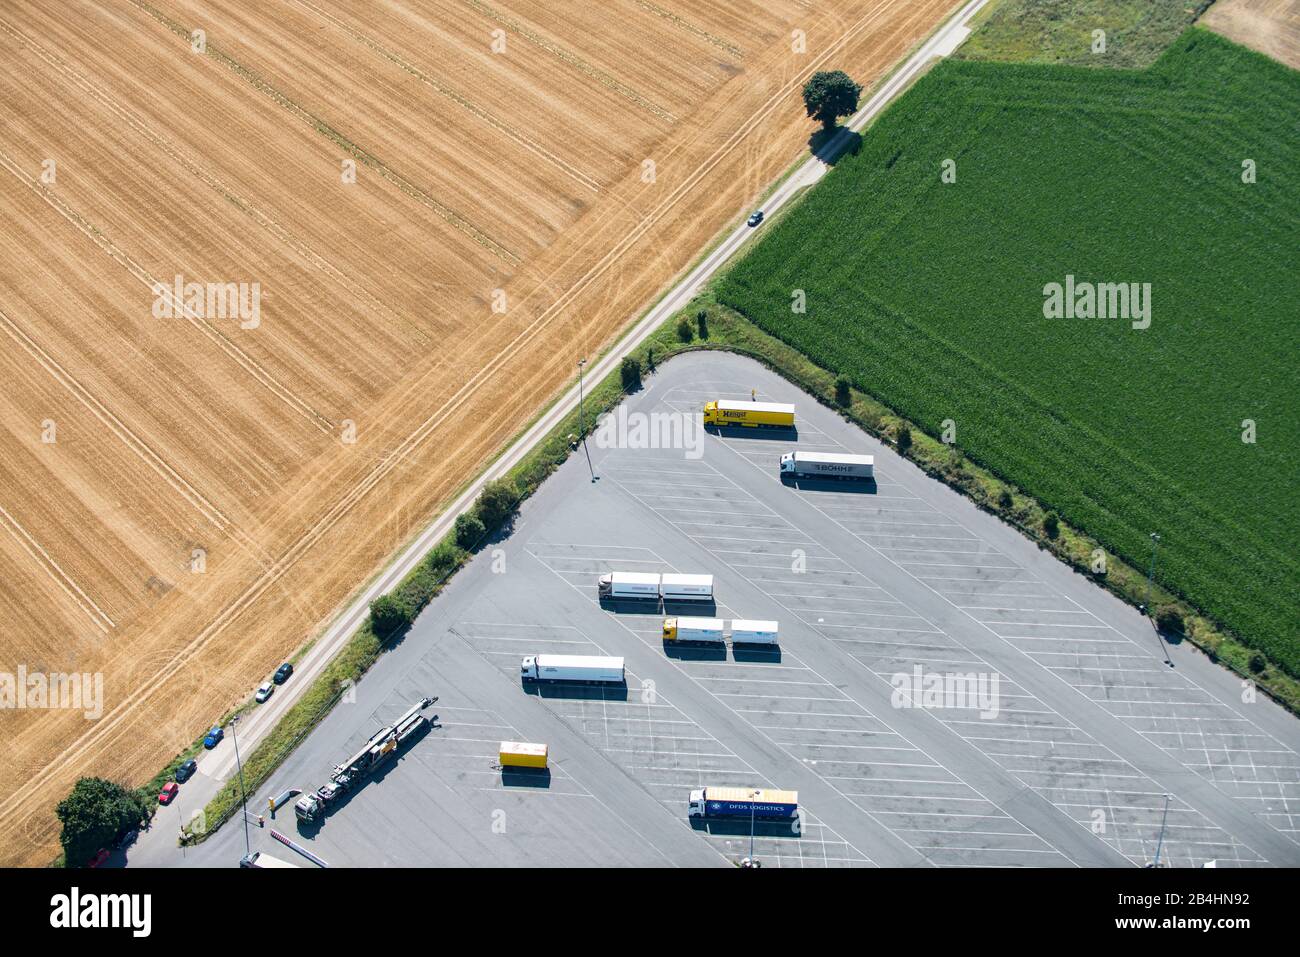 Ludtaufnahme eines LKW-Parkplatzes am rande großer landwirtschaftlicher Felder Stock Photo